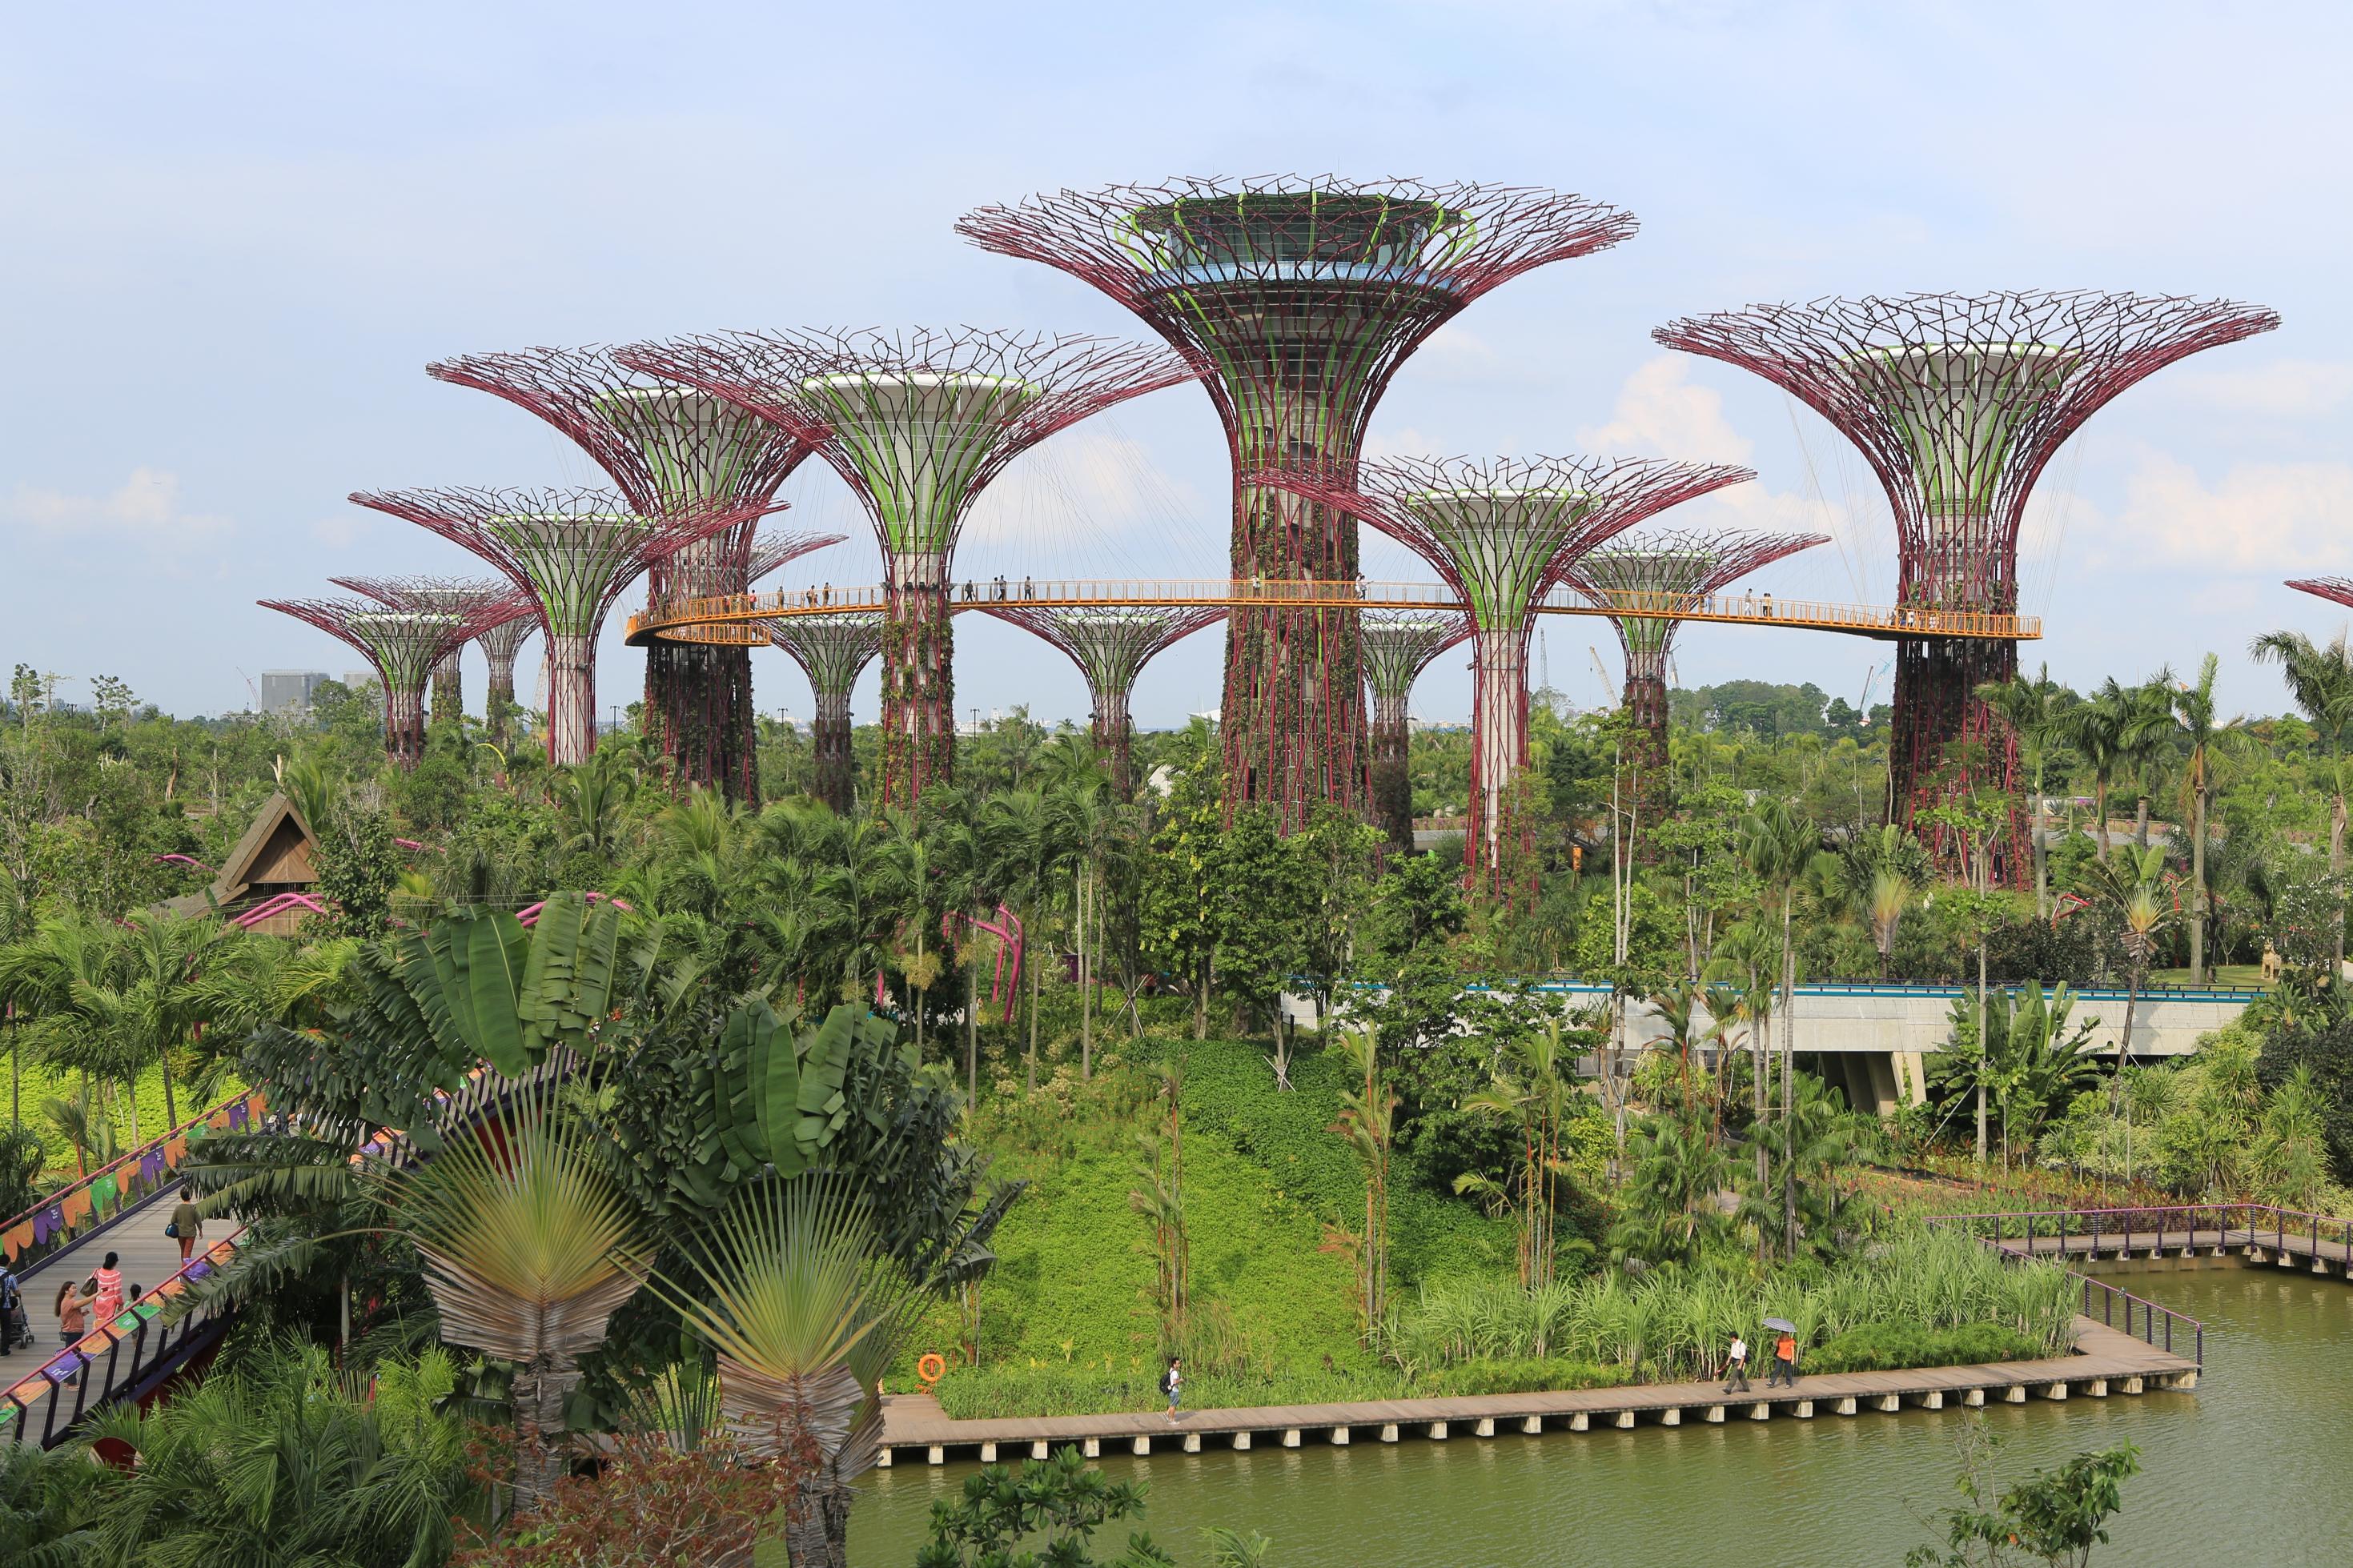 EIn palmenbestandener Park am Wasser, darüber elf fächerförmige Stahlkonstruktionen, in deren Inneren Gewächshäuser untergebracht sind